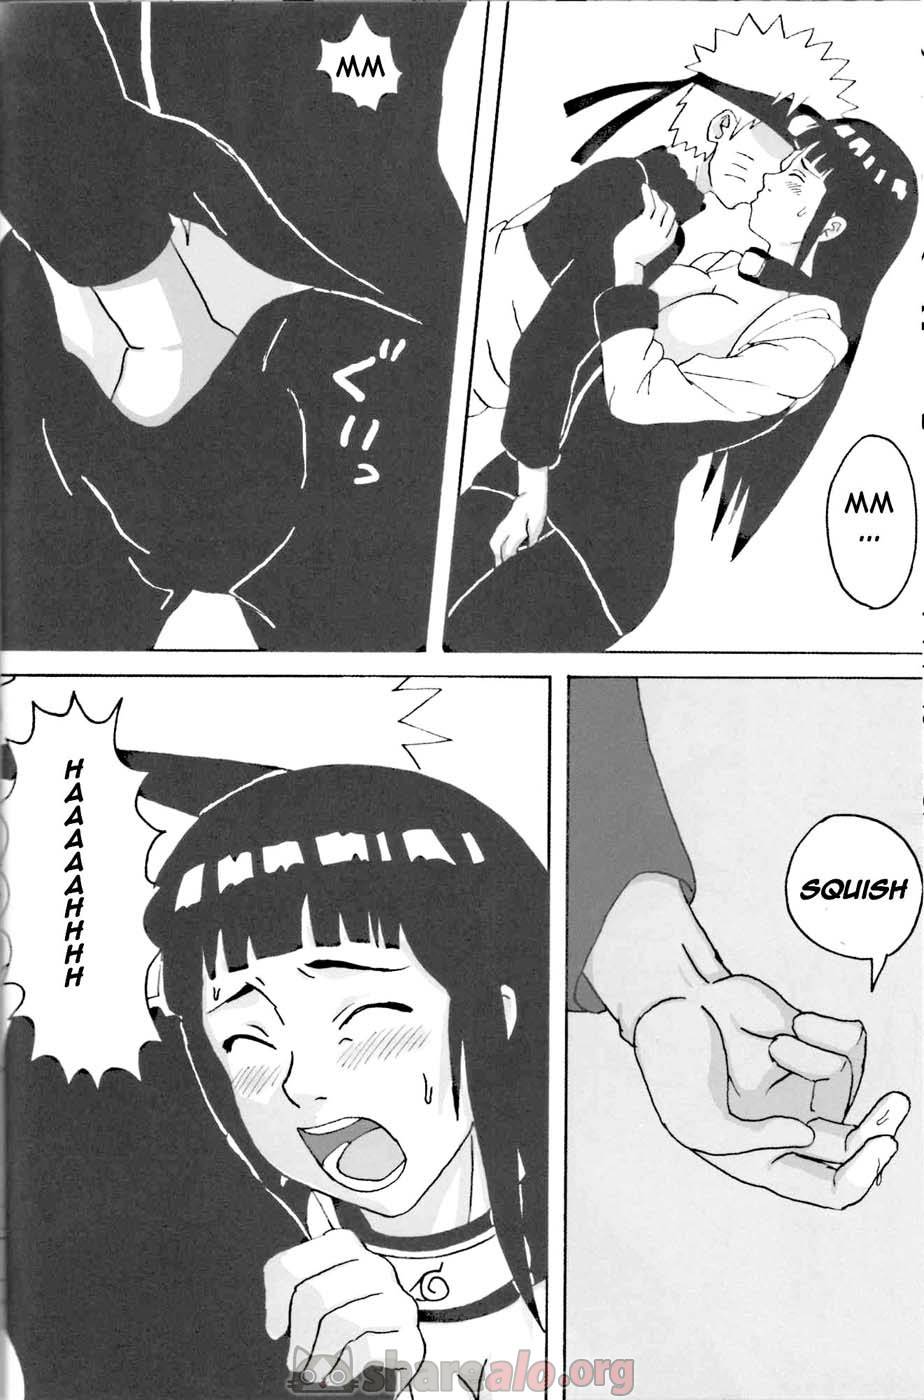 Hinata Ganbaru Doujin - 9 - Comics Porno - Hentai Manga - Cartoon XXX